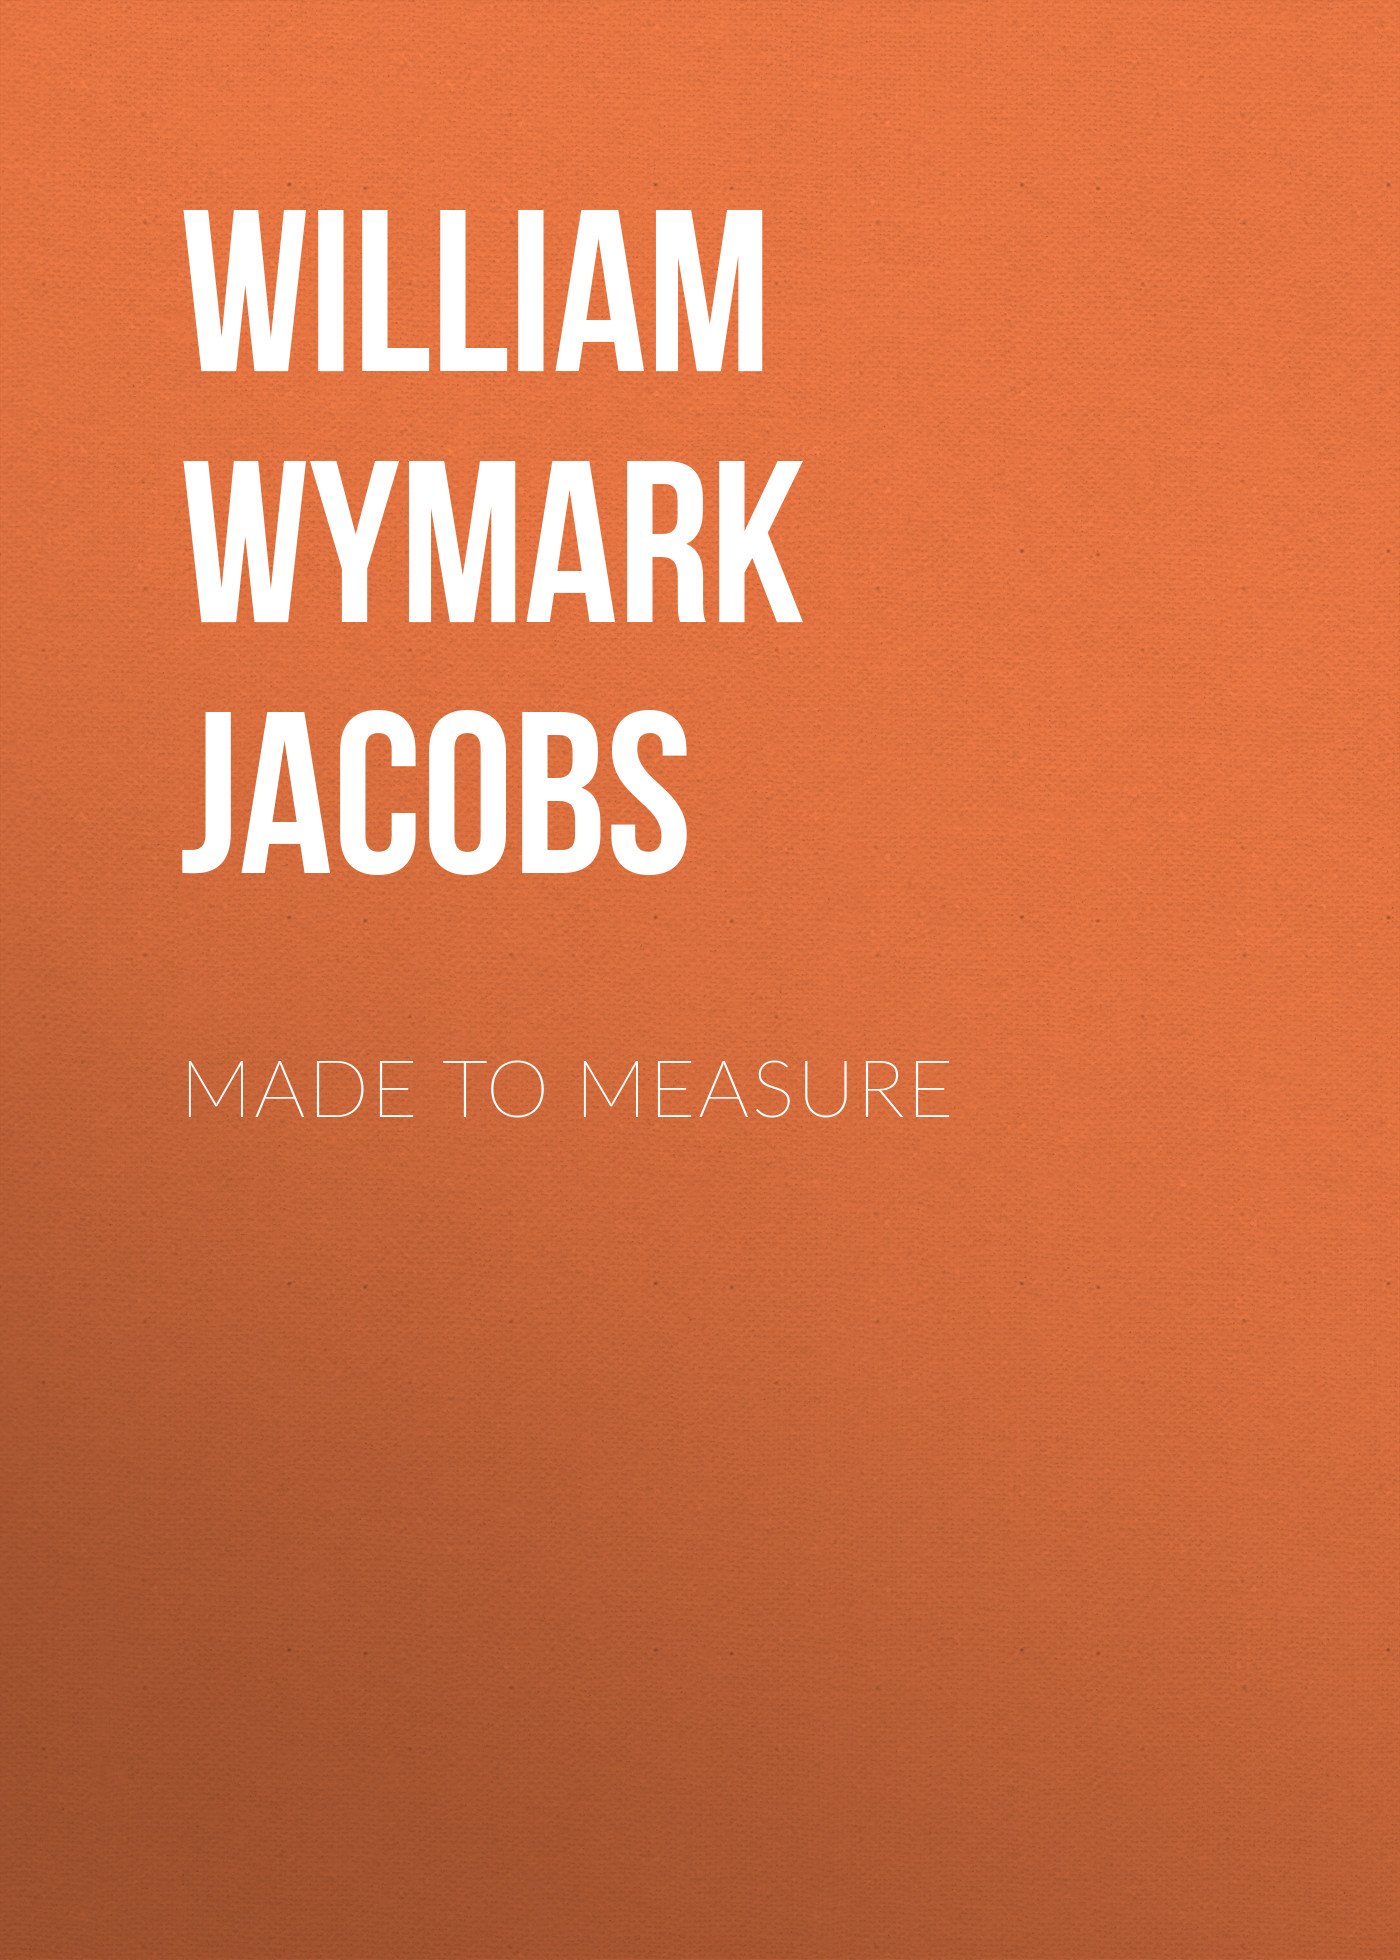 Книга Made to Measure из серии , созданная William Wymark Jacobs, может относится к жанру Зарубежная классика, Зарубежная старинная литература. Стоимость электронной книги Made to Measure с идентификатором 34841758 составляет 0 руб.